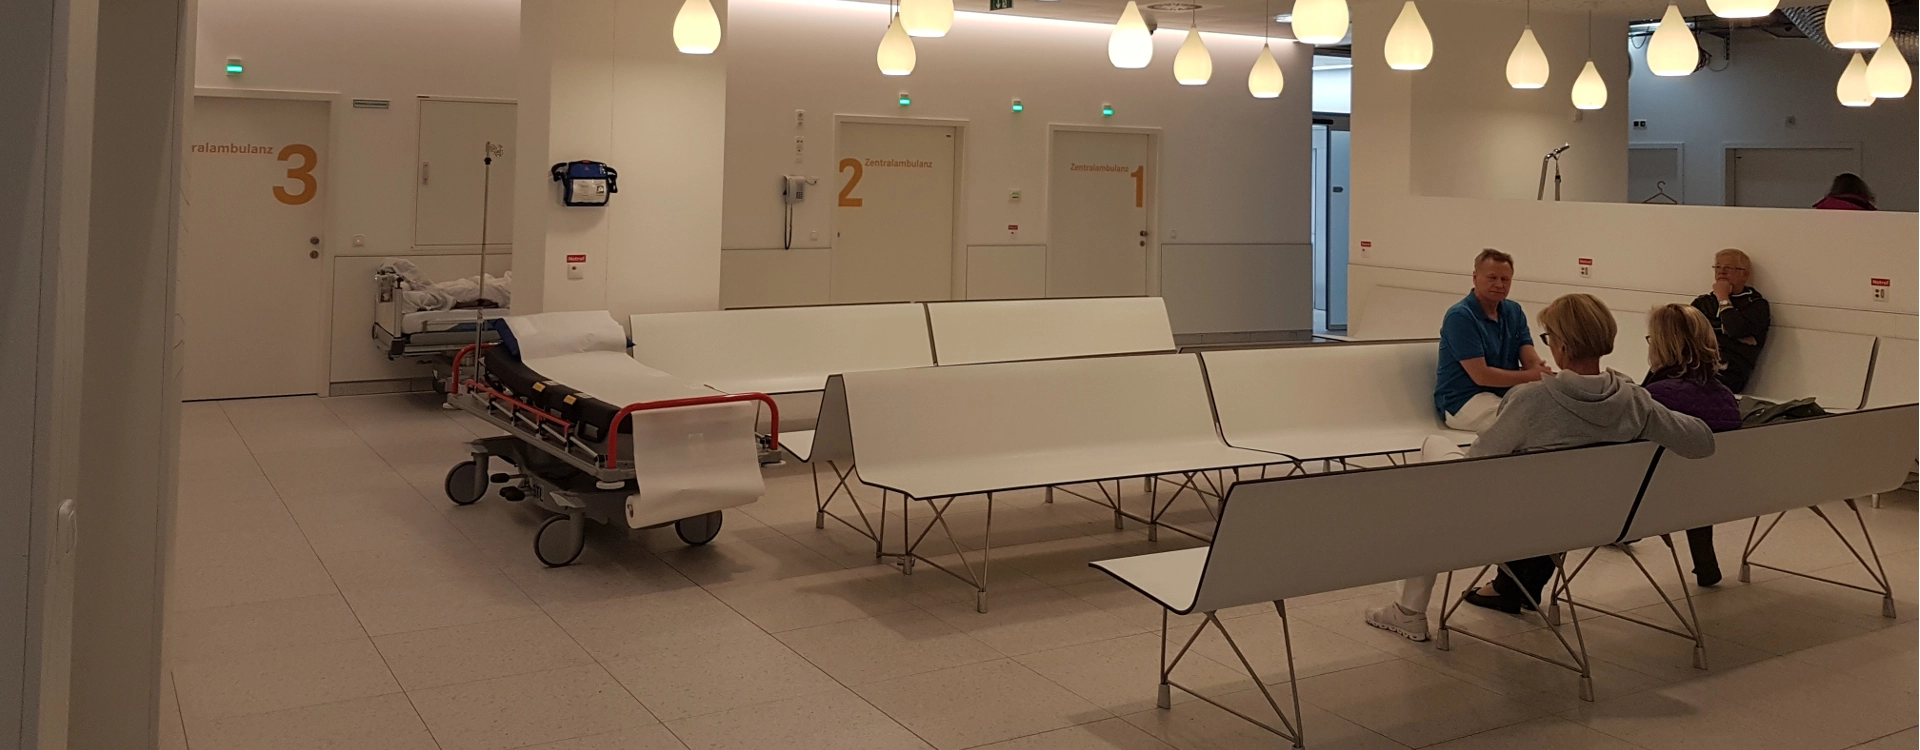  Krankenhaus Tamsweg mit der Aero Bank Kompakt ausgestattet